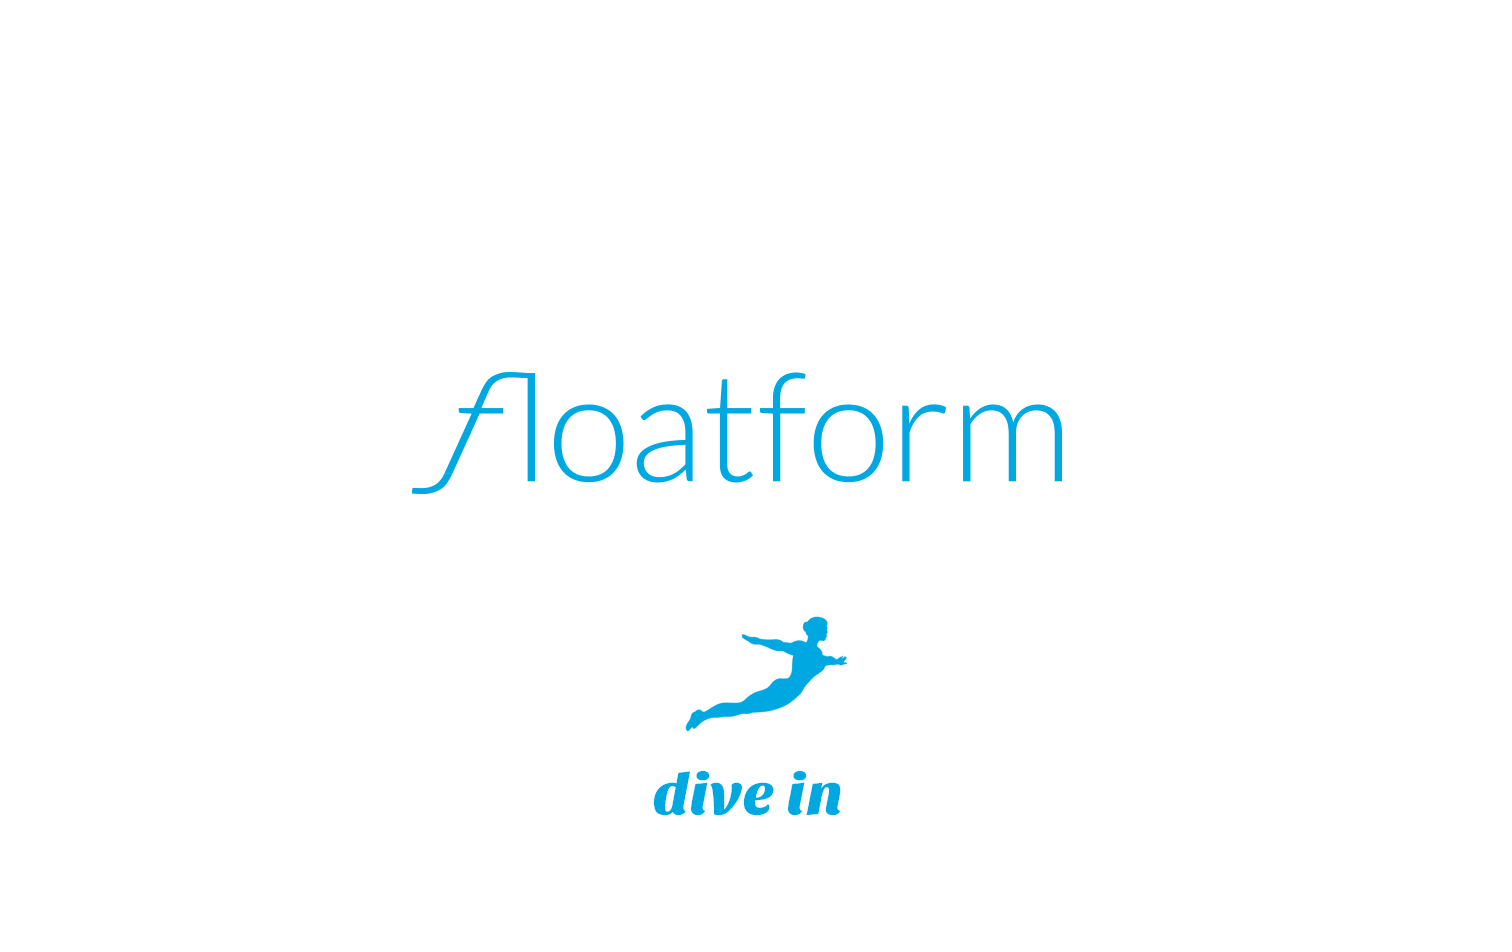 floatform - dive in